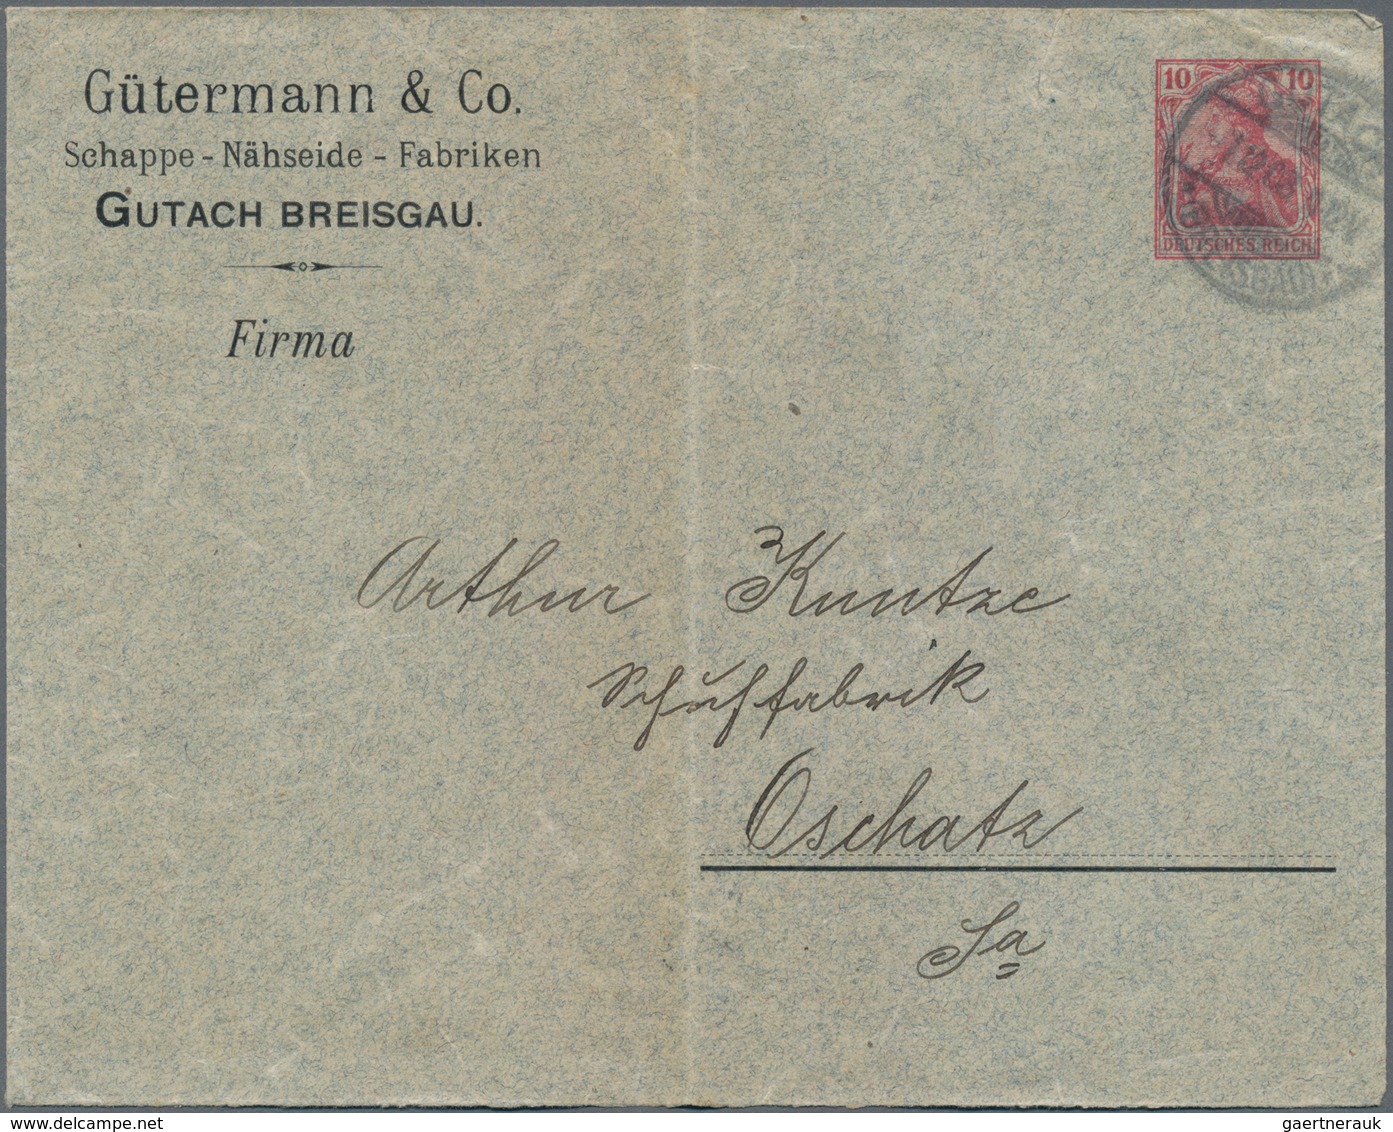 Altdeutschland und Deutsches Reich: 1855/1945 (ca.), vielseitige Partie von ca. 450 Briefen, Karten